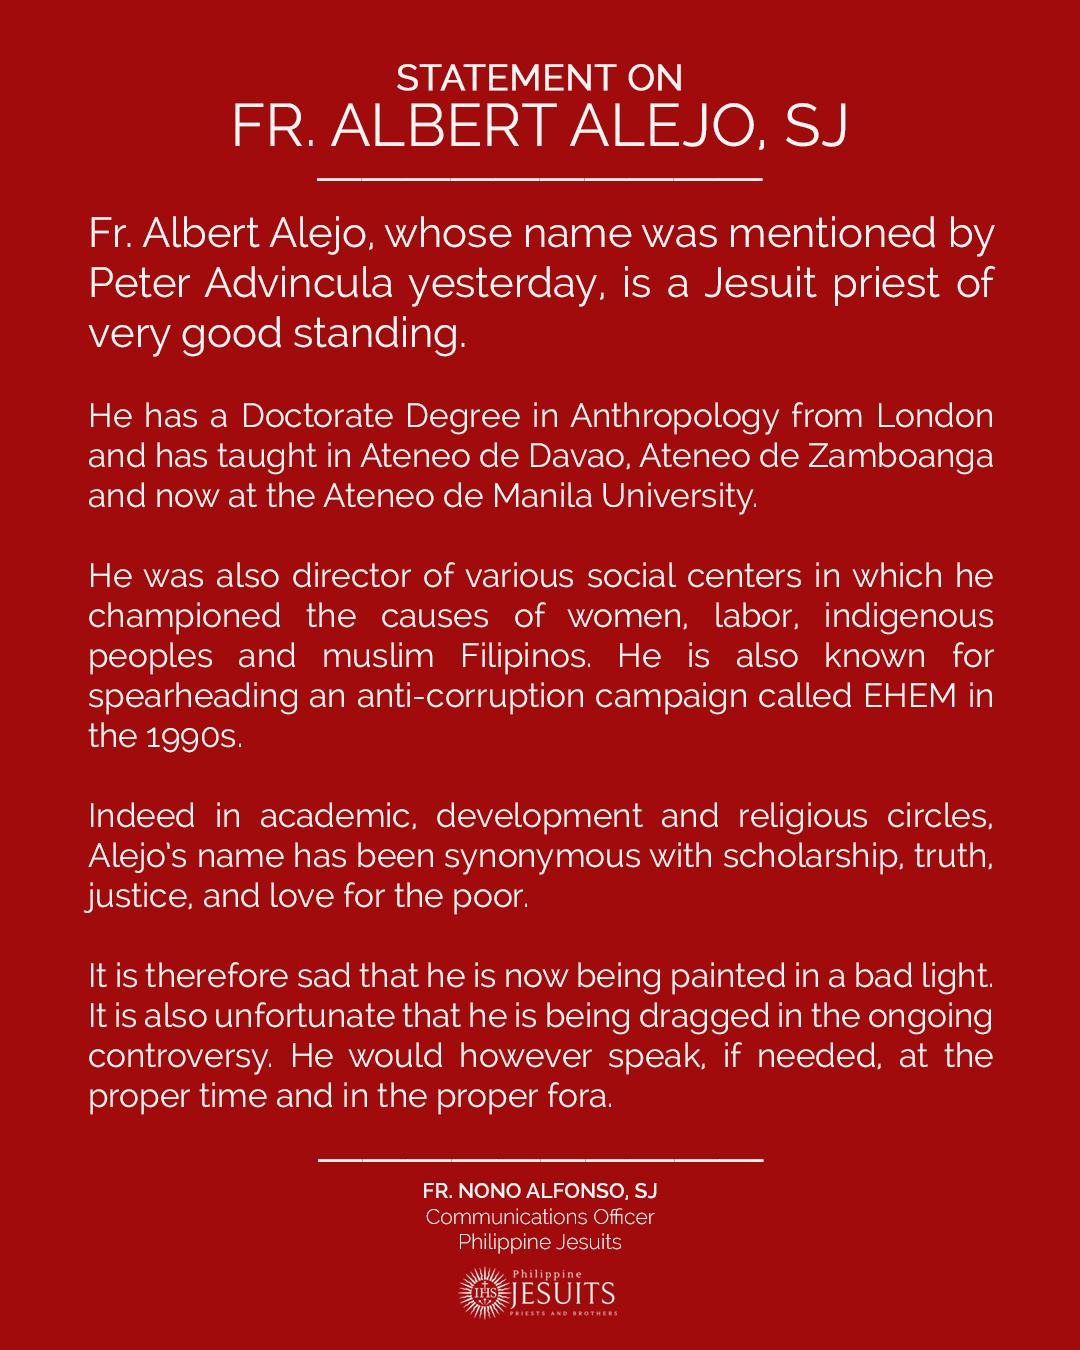 Statement on Fr. Albert Alejo, SJ